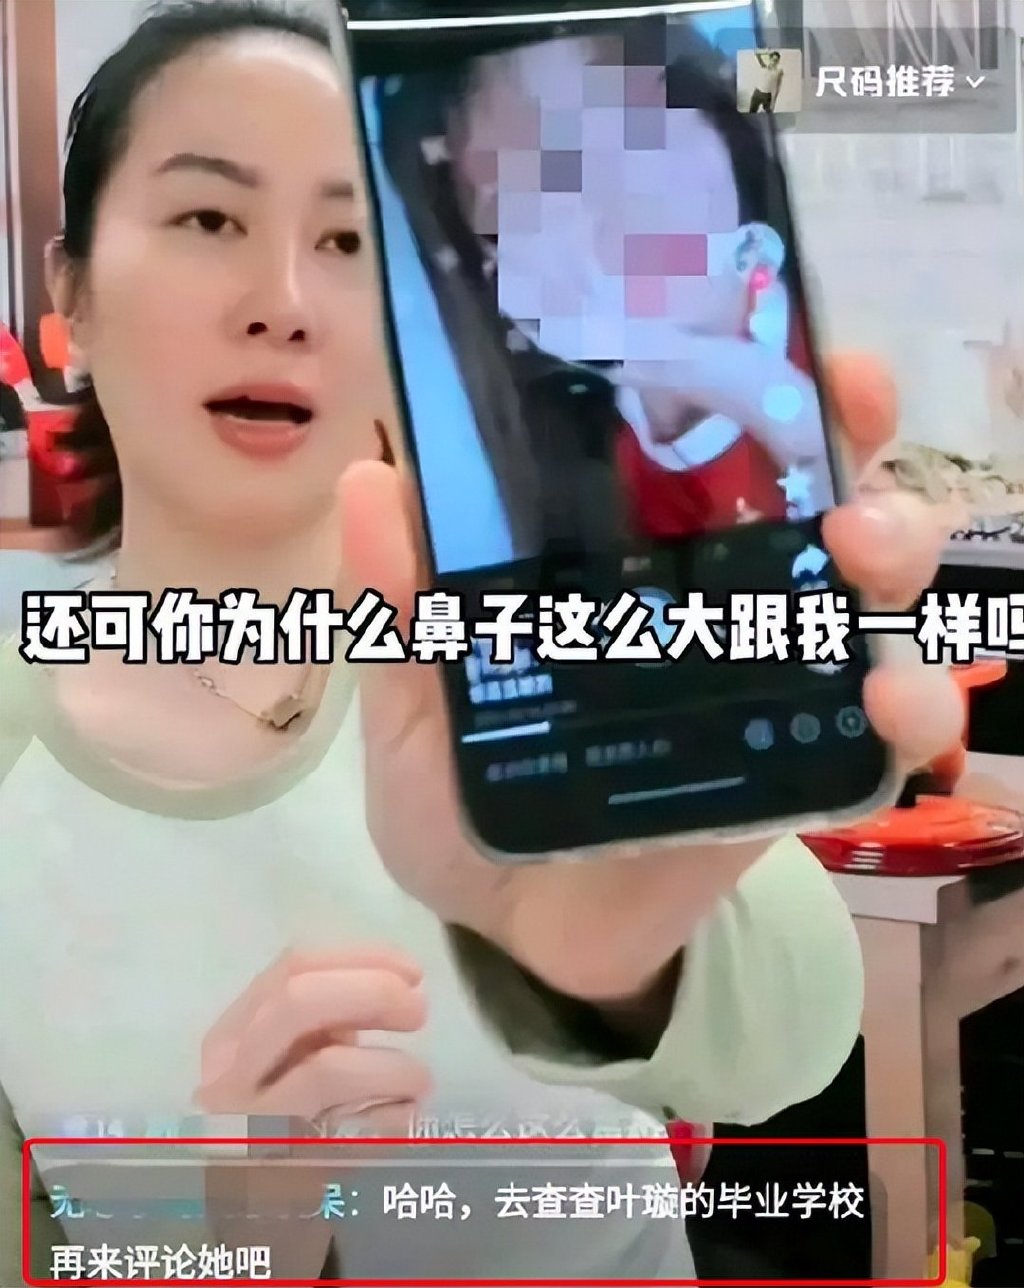 男子为增加关注度网上发视频侮辱女交警被刑拘 - 我们视频 - 新京报网